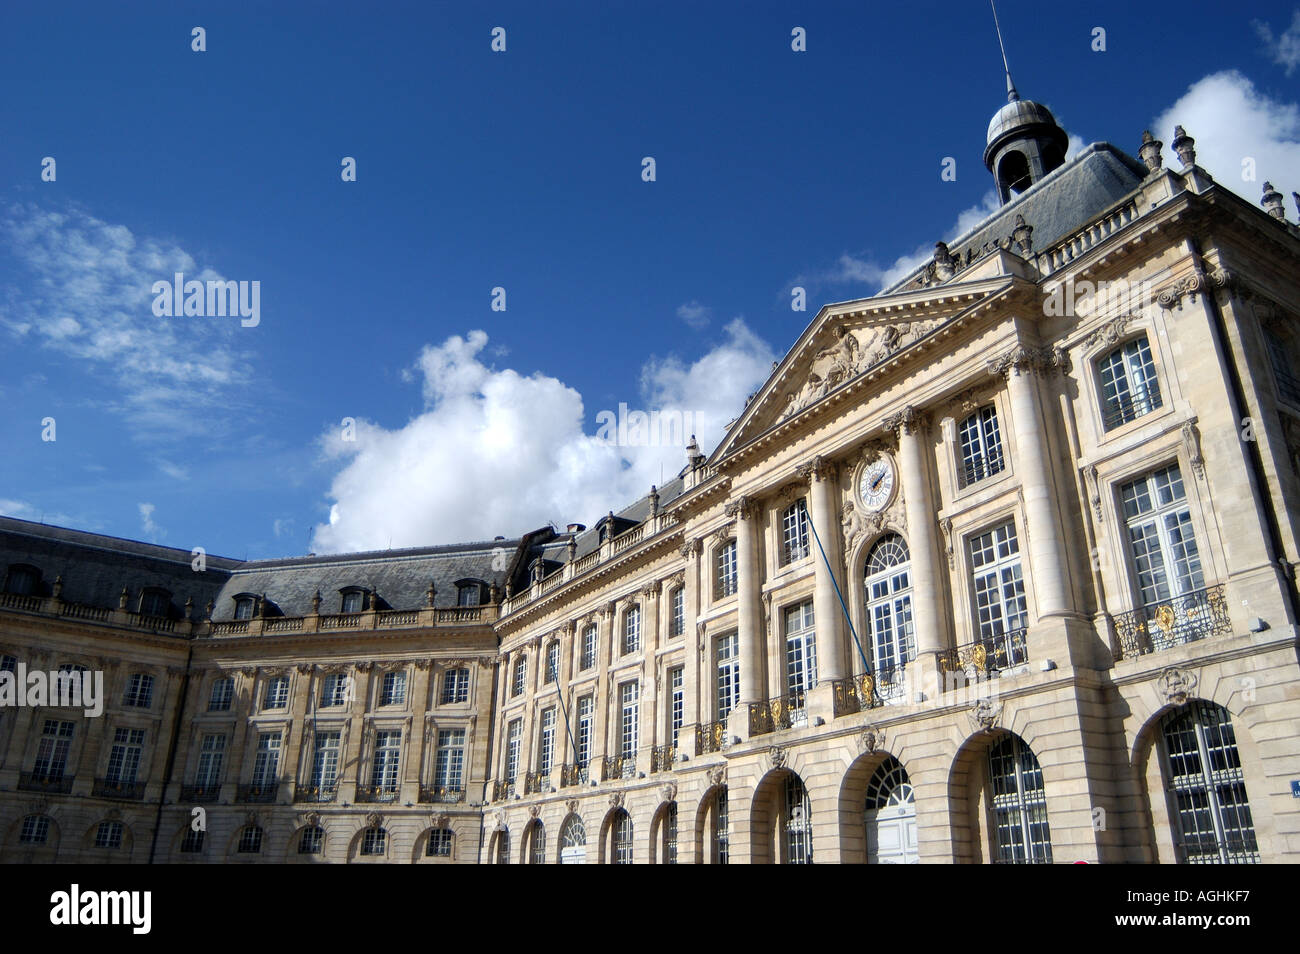 Architecture of Place de la Bourse Bordeaux France Stock Photo